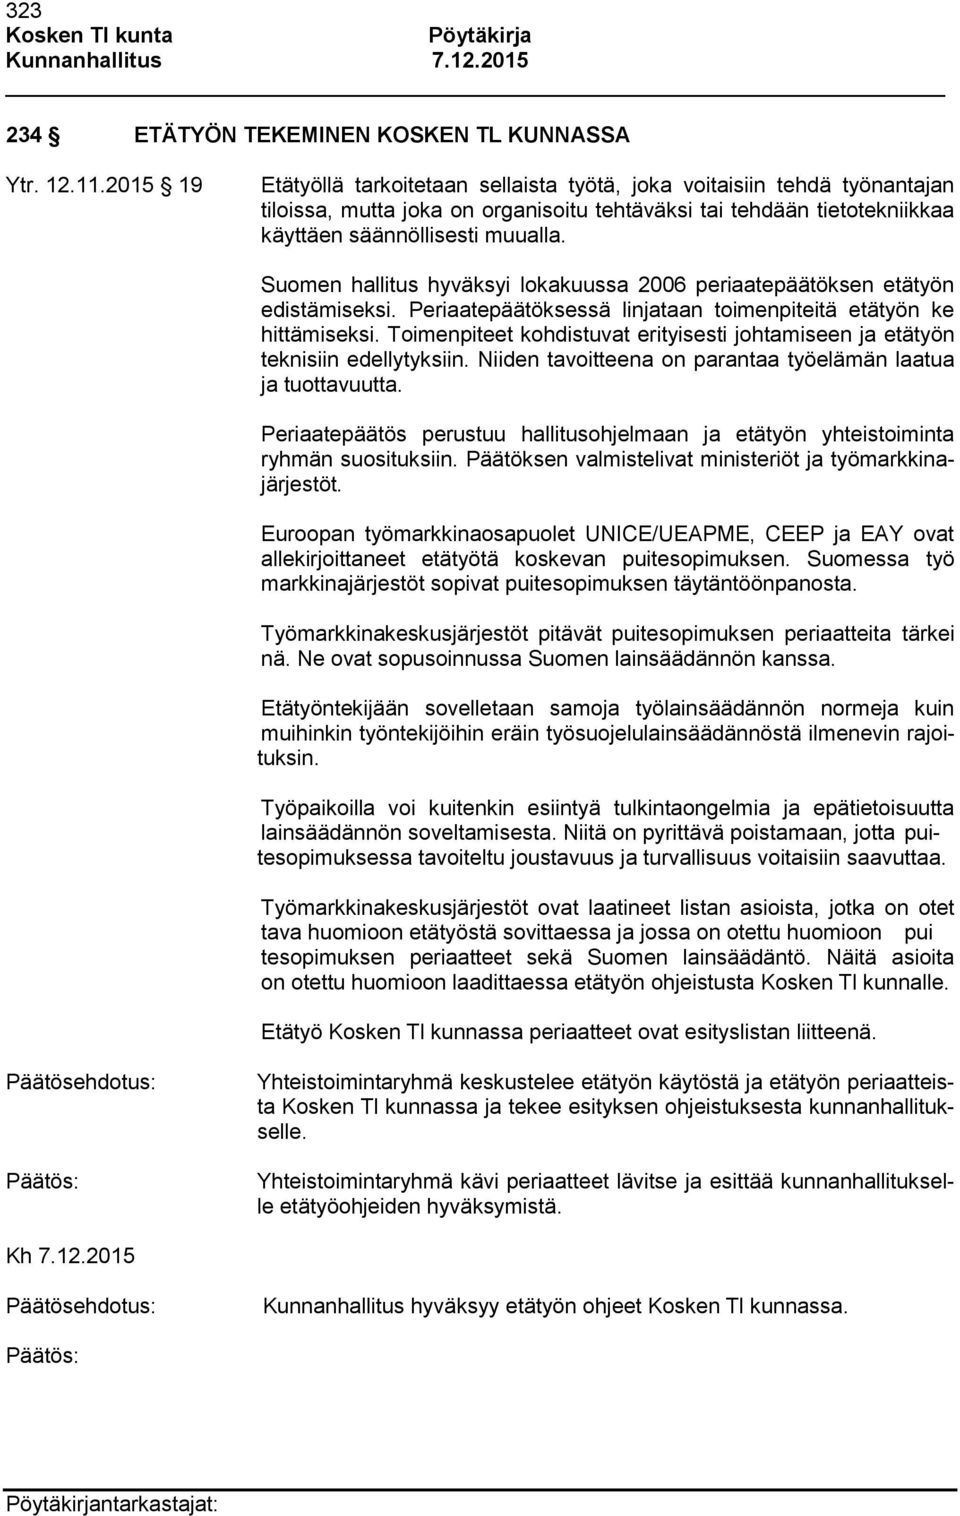 Suomen hallitus hyväksyi lokakuussa 2006 periaatepäätöksen etätyön edistämiseksi. Periaatepäätöksessä linjataan toimenpiteitä etätyön ke hittämiseksi.